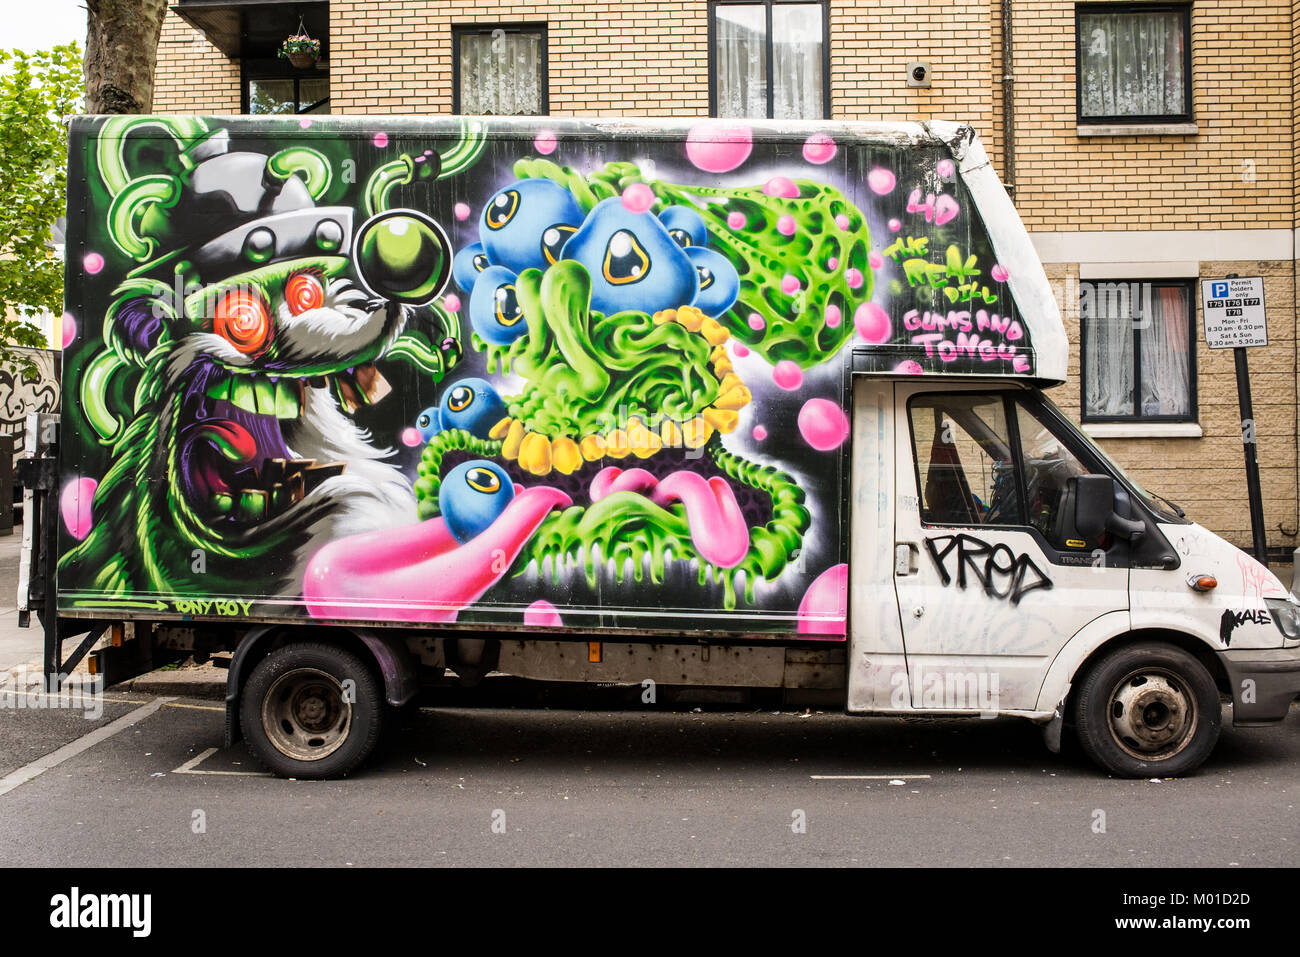 Londres, UK - avril 2017. Vieux van couverts dans le street art graffiti dans Camden Town, , le nord de Londres, Angleterre, RU Banque D'Images